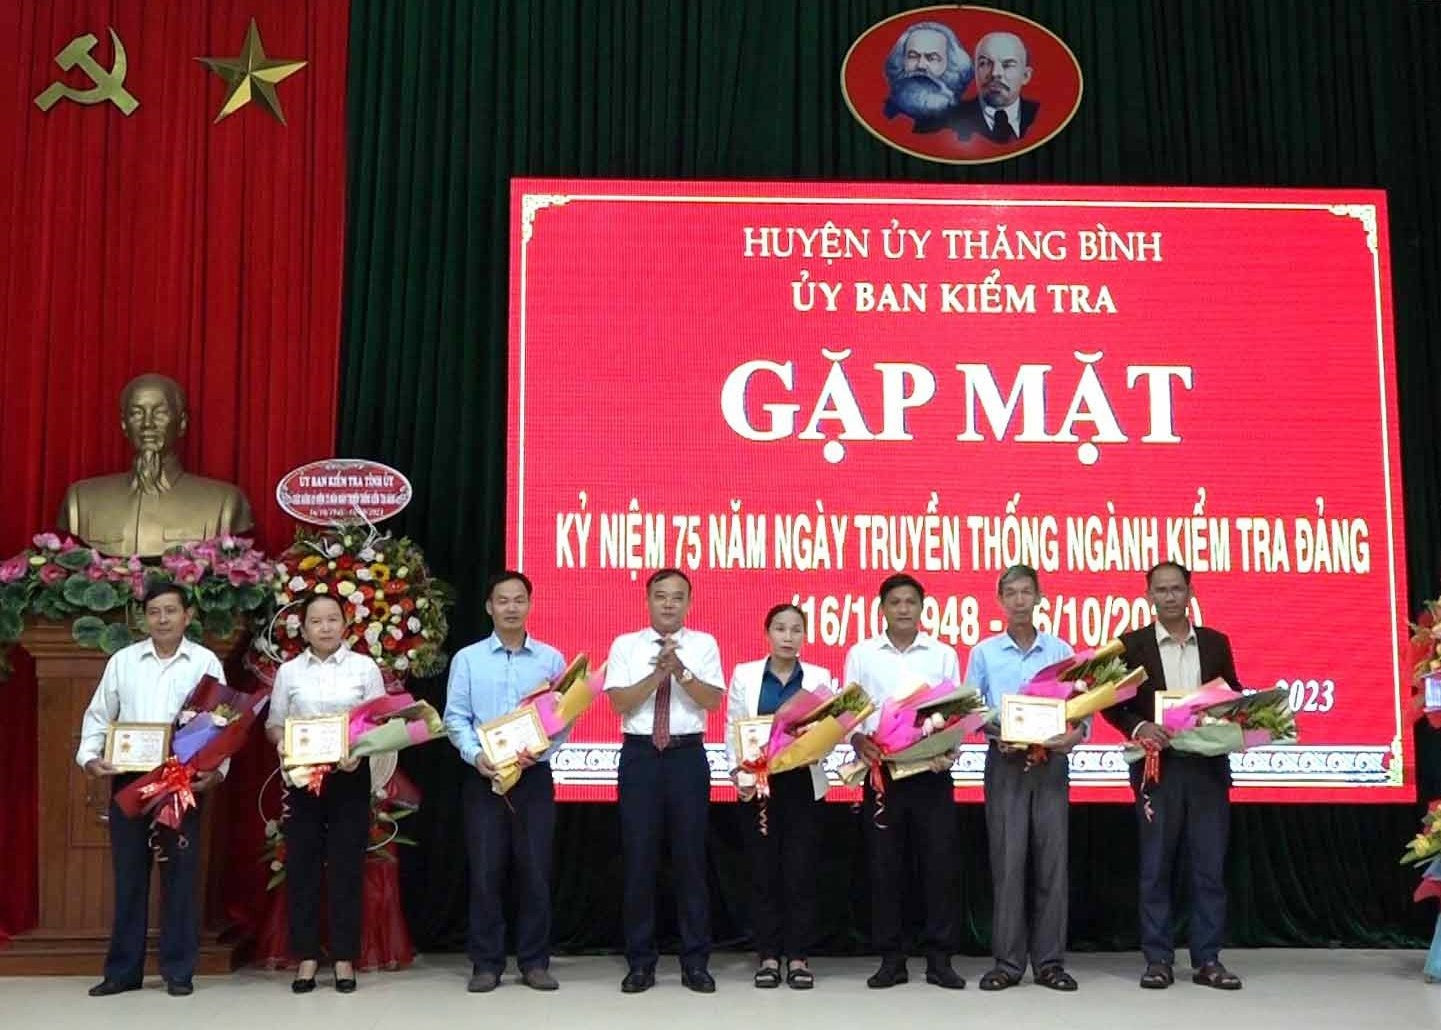 Đồng chí Lê Quang Hạt – Phó Bí thư Thường trực Huyện ủy trao kỷ niệm chương “Vì sự nghiệp kiểm tra của Đảng” cho các đồng chí. Ảnh: T.N